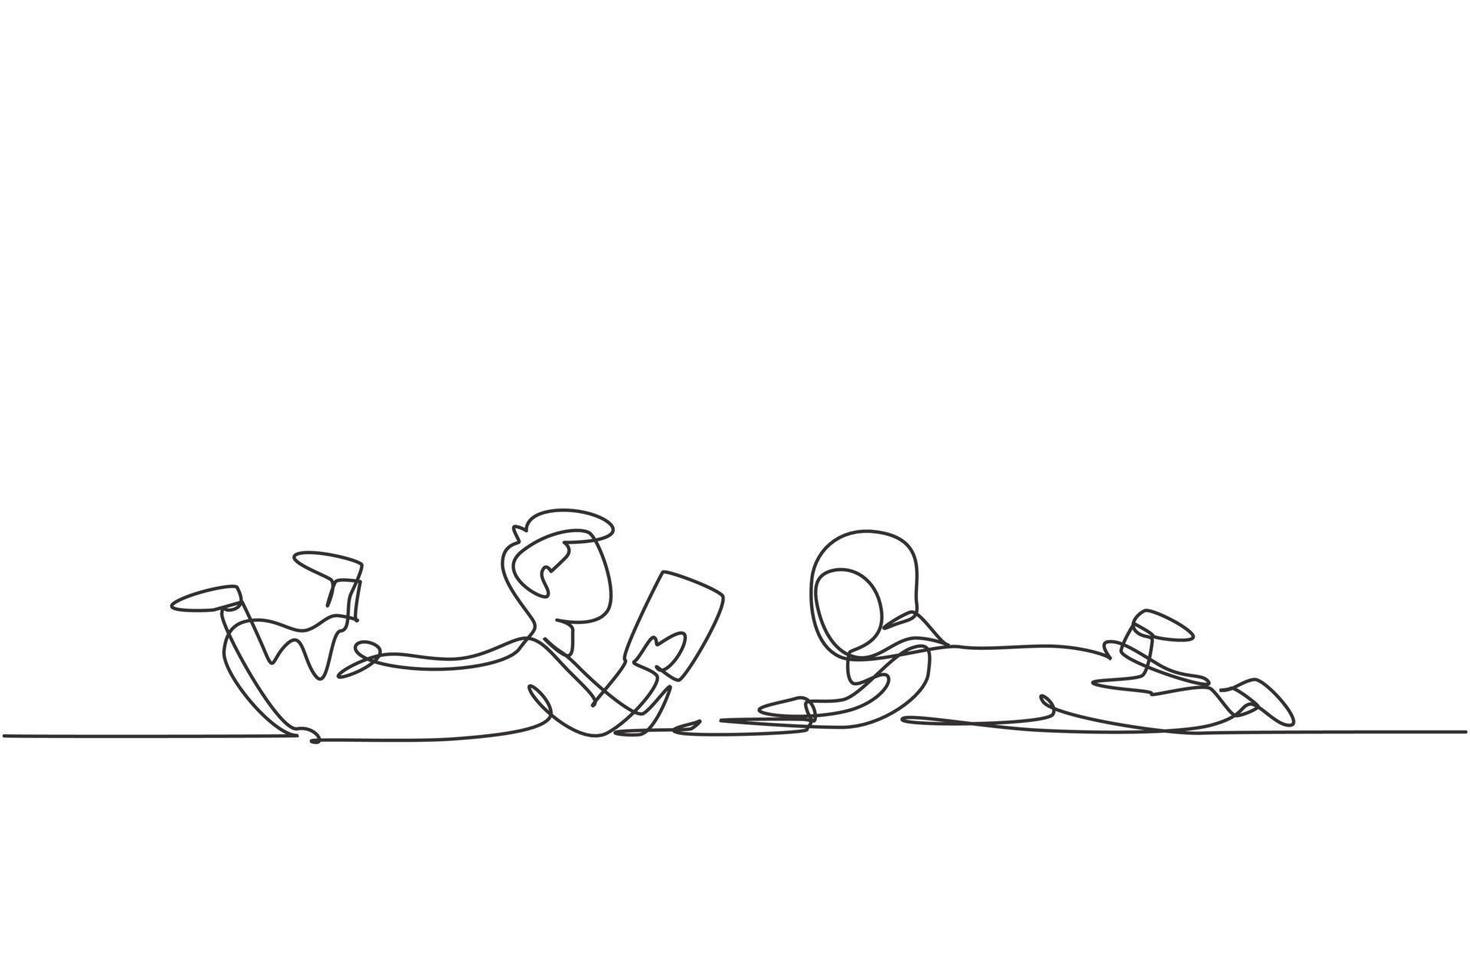 enkele lijntekening twee Arabische kinderen jongen en meisje lezen, leren en op de vloer liggen. thuis studeren. slimme studenten, onderwijs. doorlopende lijn tekenen ontwerp grafische vectorillustratie vector